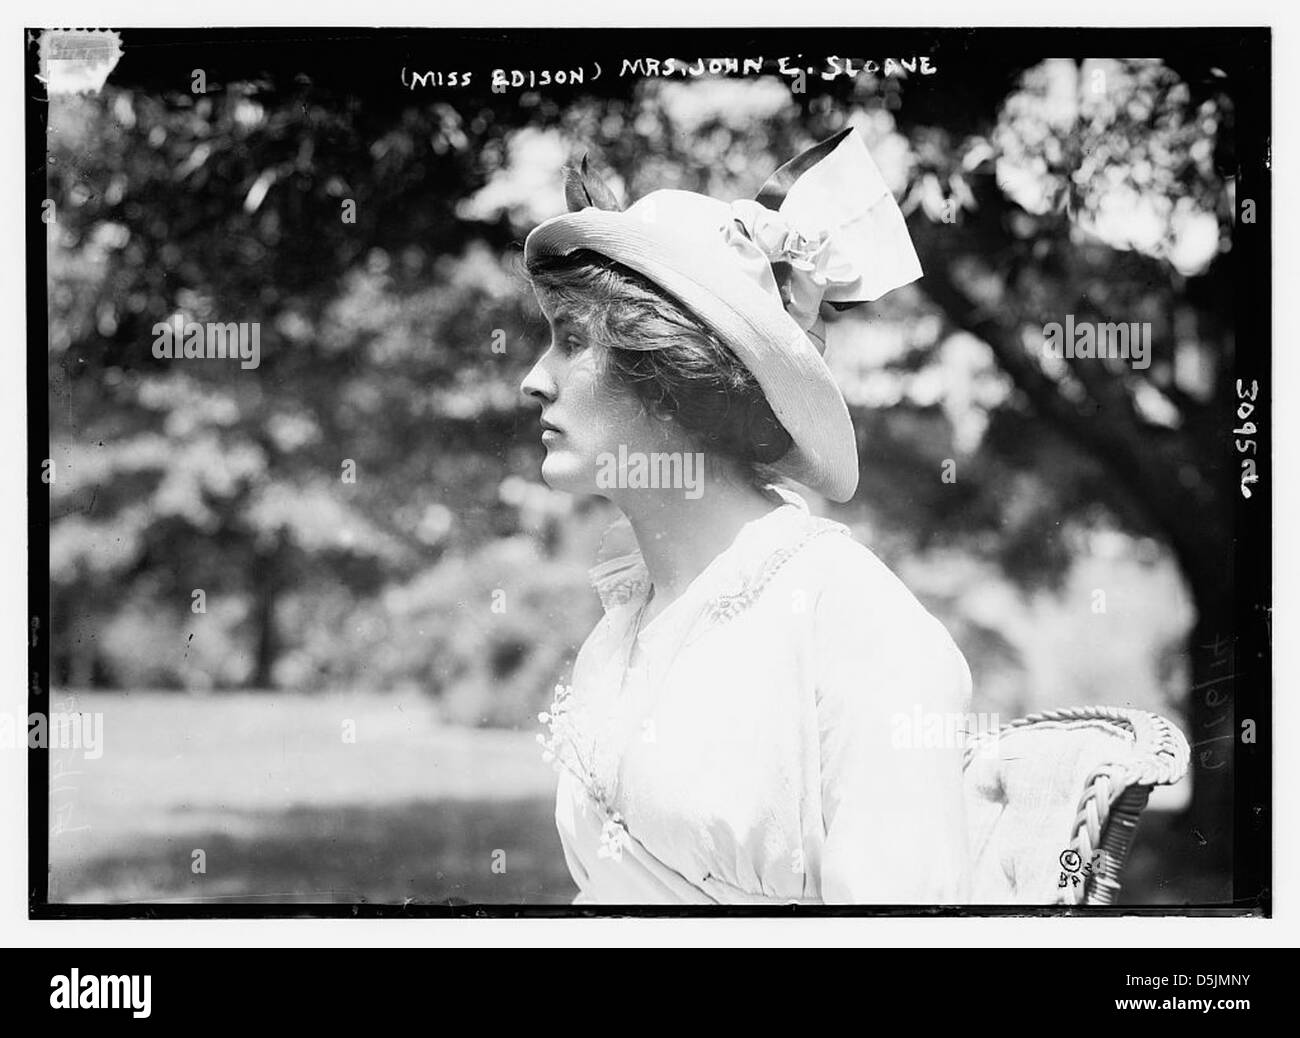 (Miss Edison) Mrs. John E. Sloane (LOC) Stock Photo